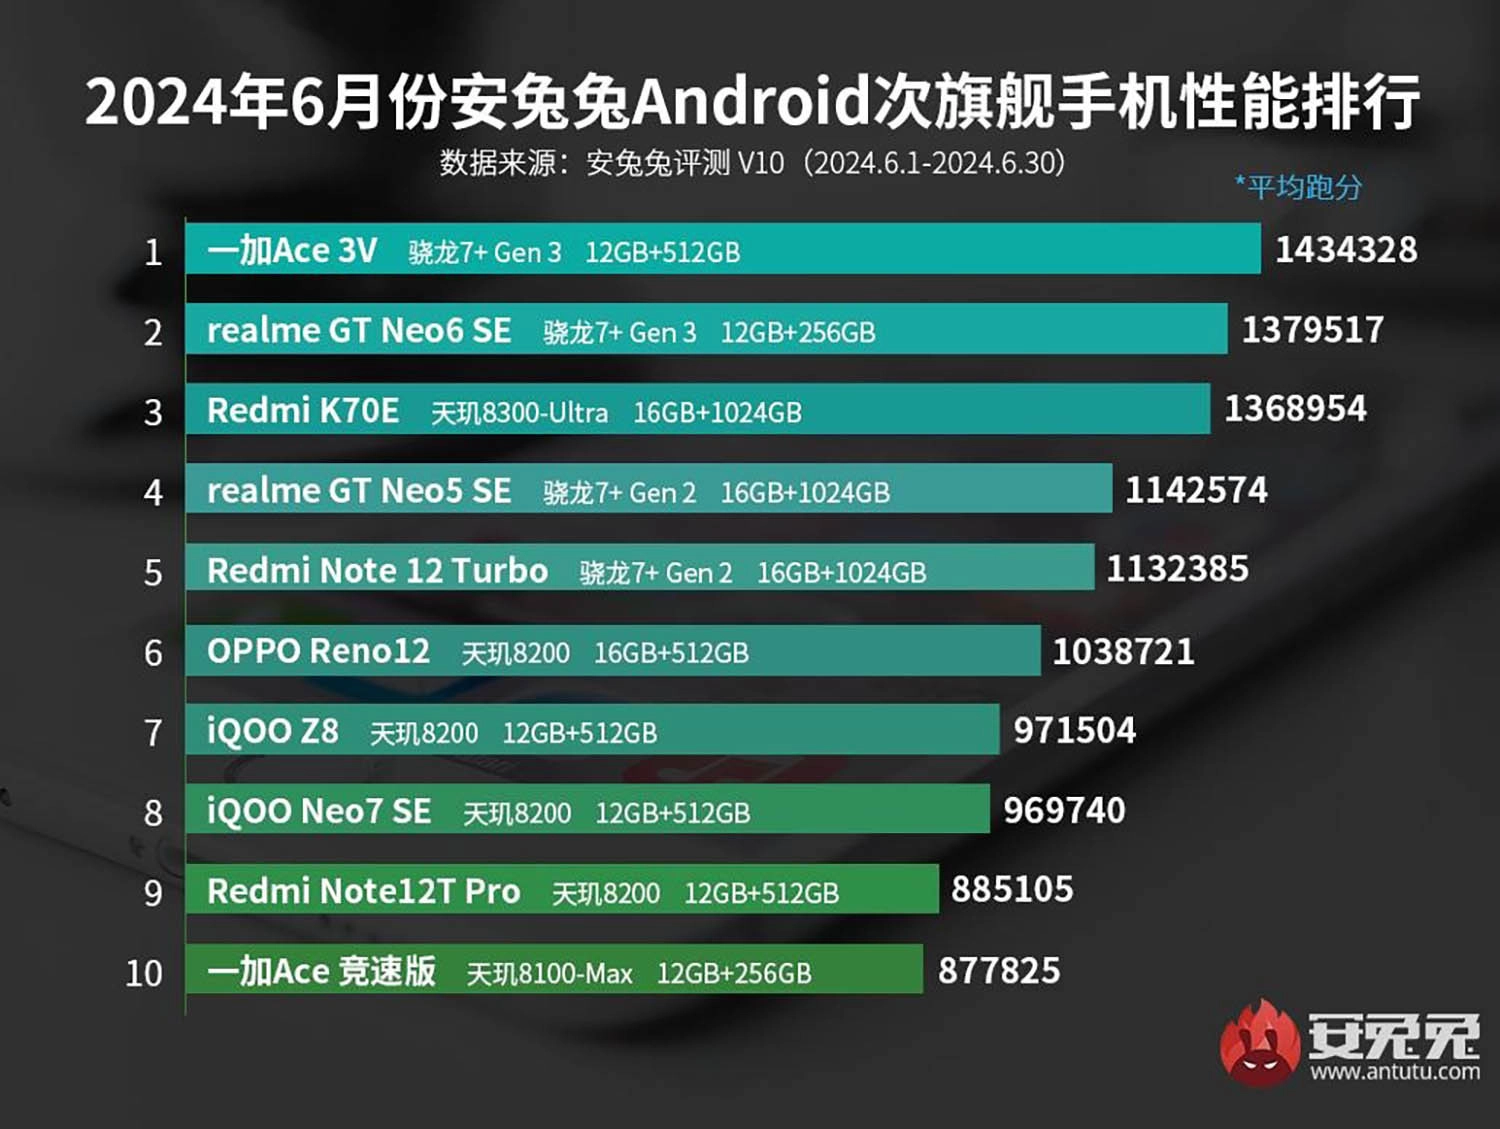 Bảng xếp hạng AnTuTu tháng 7 2024: Top 10 smartphone tầm trung có AnTuTu mạnh nhất 7/2024